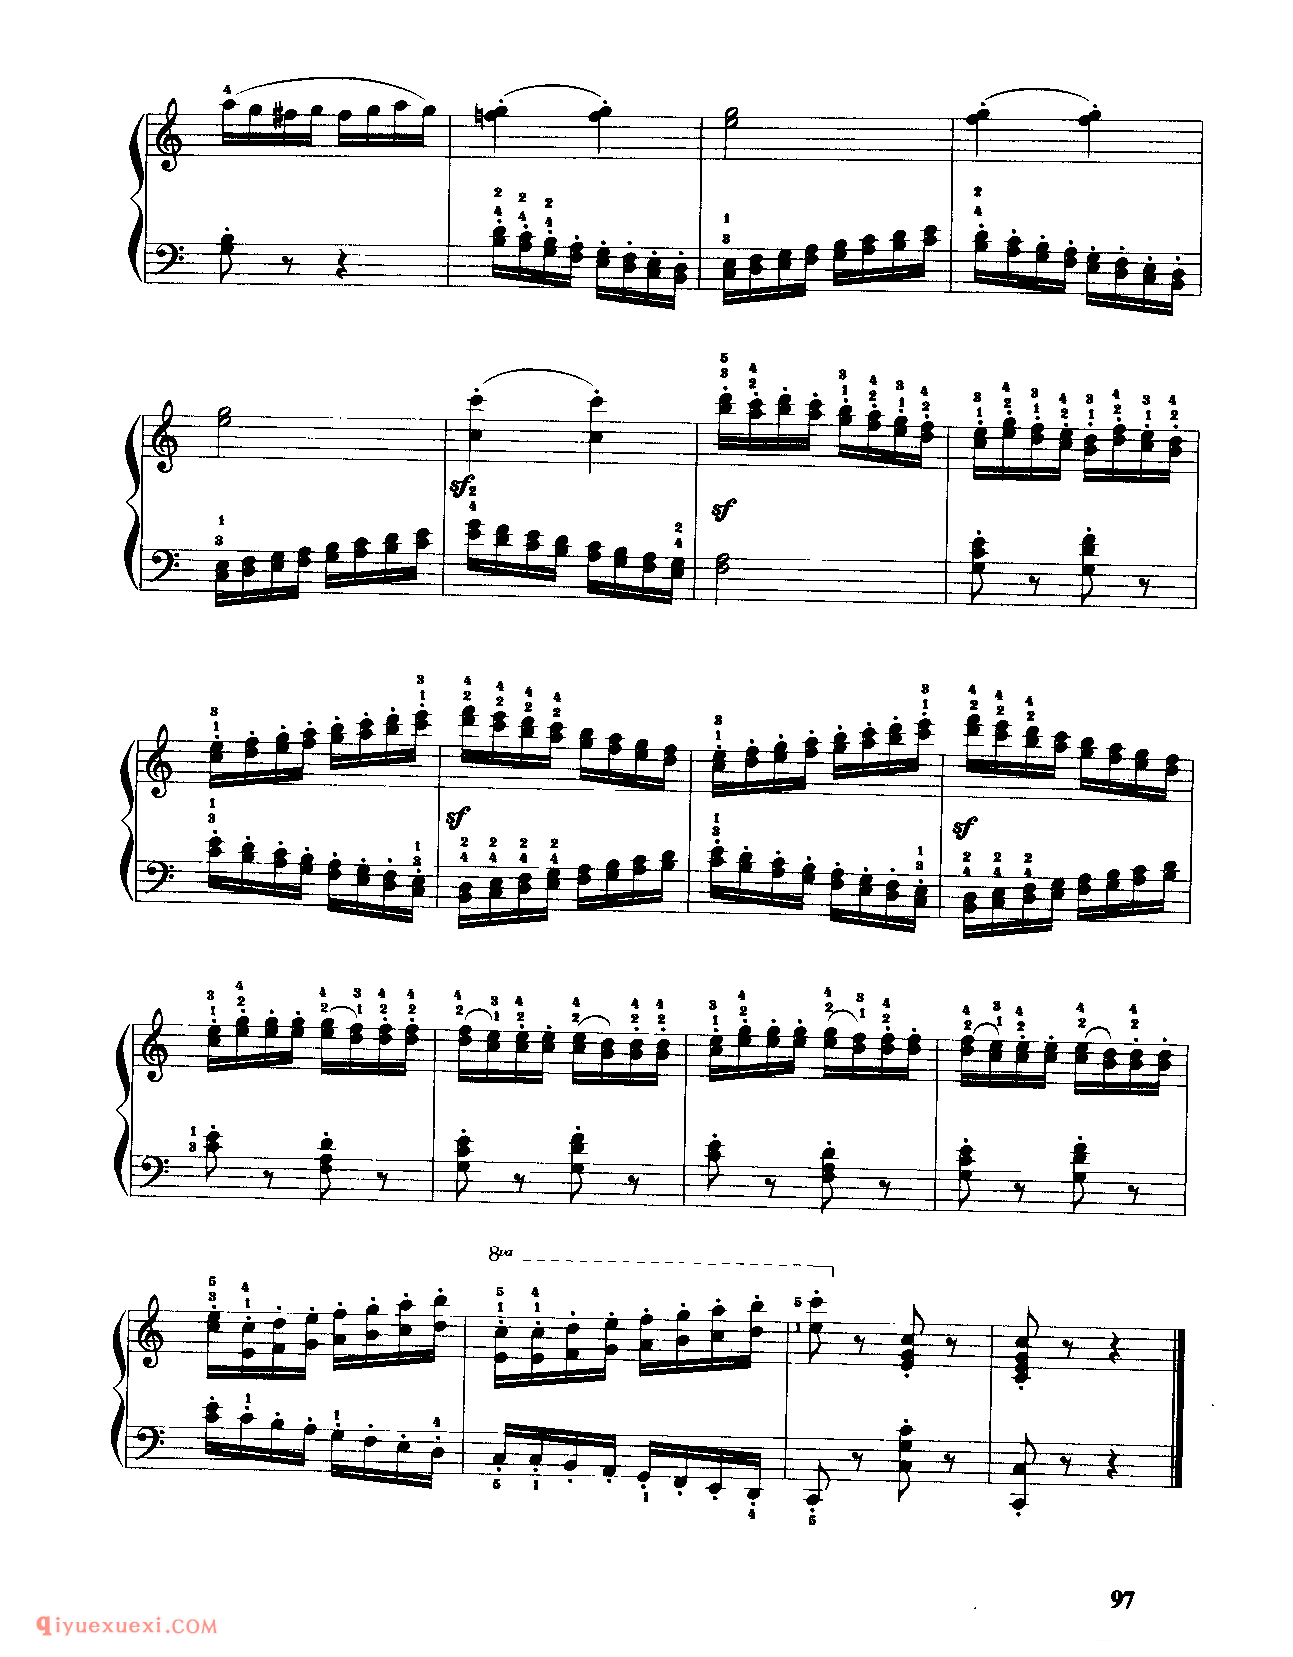 车尔尼作品636_手指灵巧的钢琴初步练习曲_车尔尼钢琴练习曲集